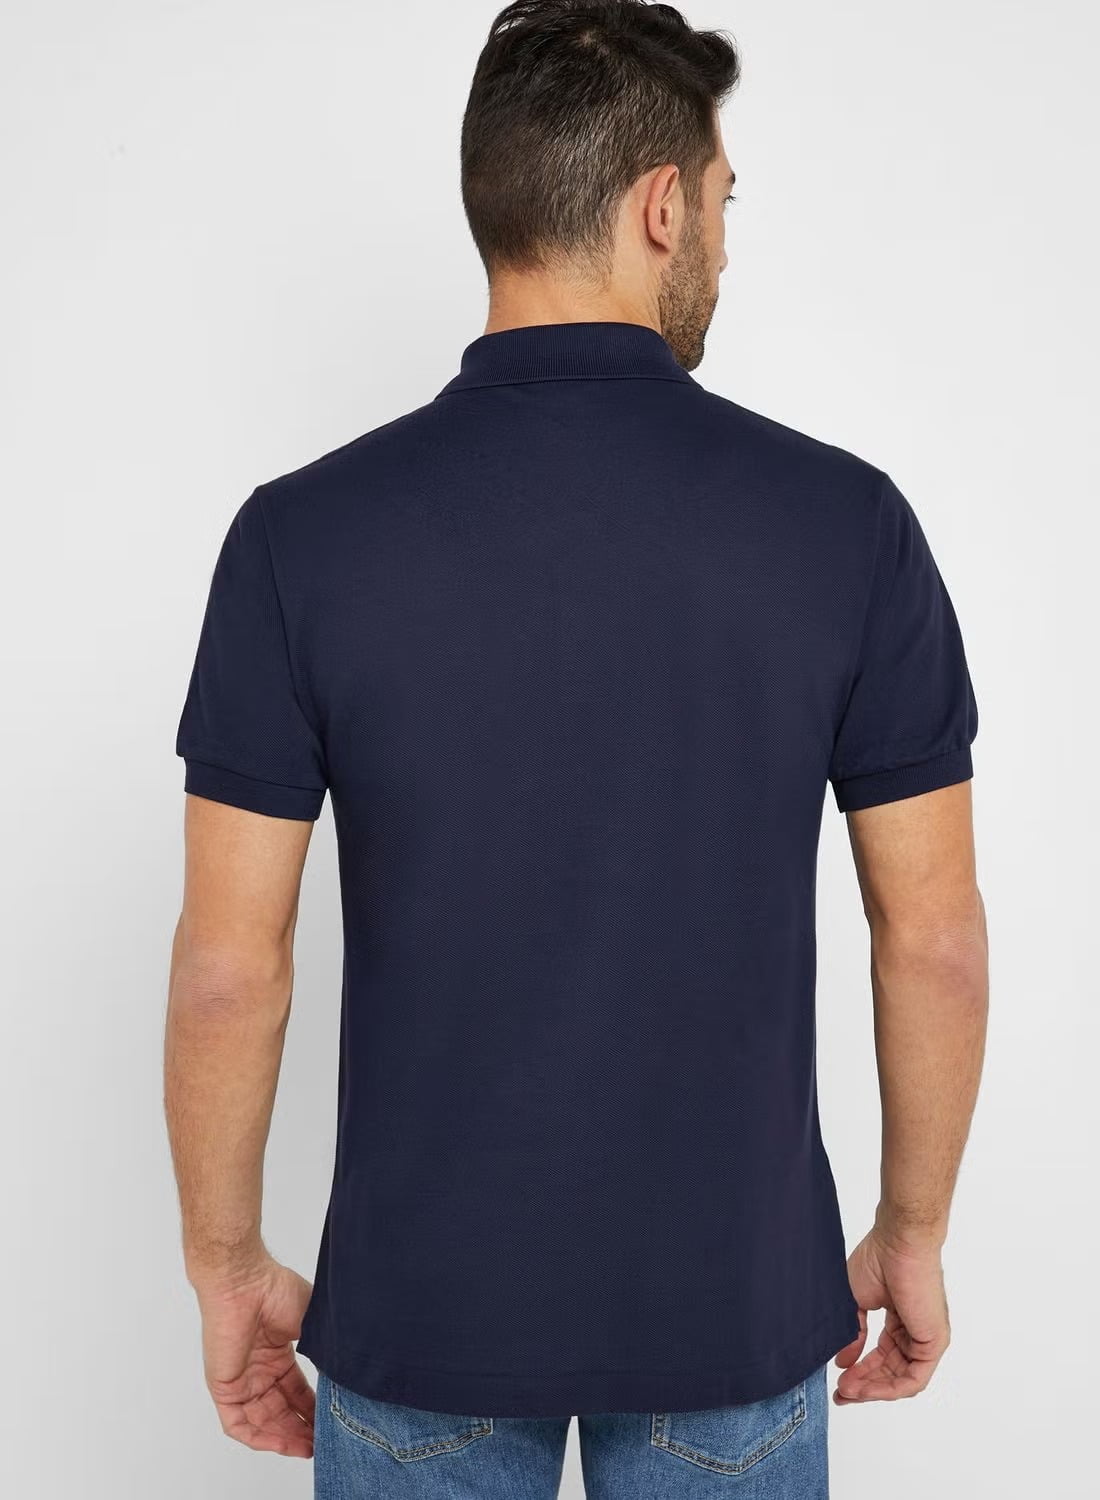 Lacoste, Shirts, Lacoste Mens 2xb Big Navy Blue Pique Pullover Mesh Pique Polo  Shirt Euc